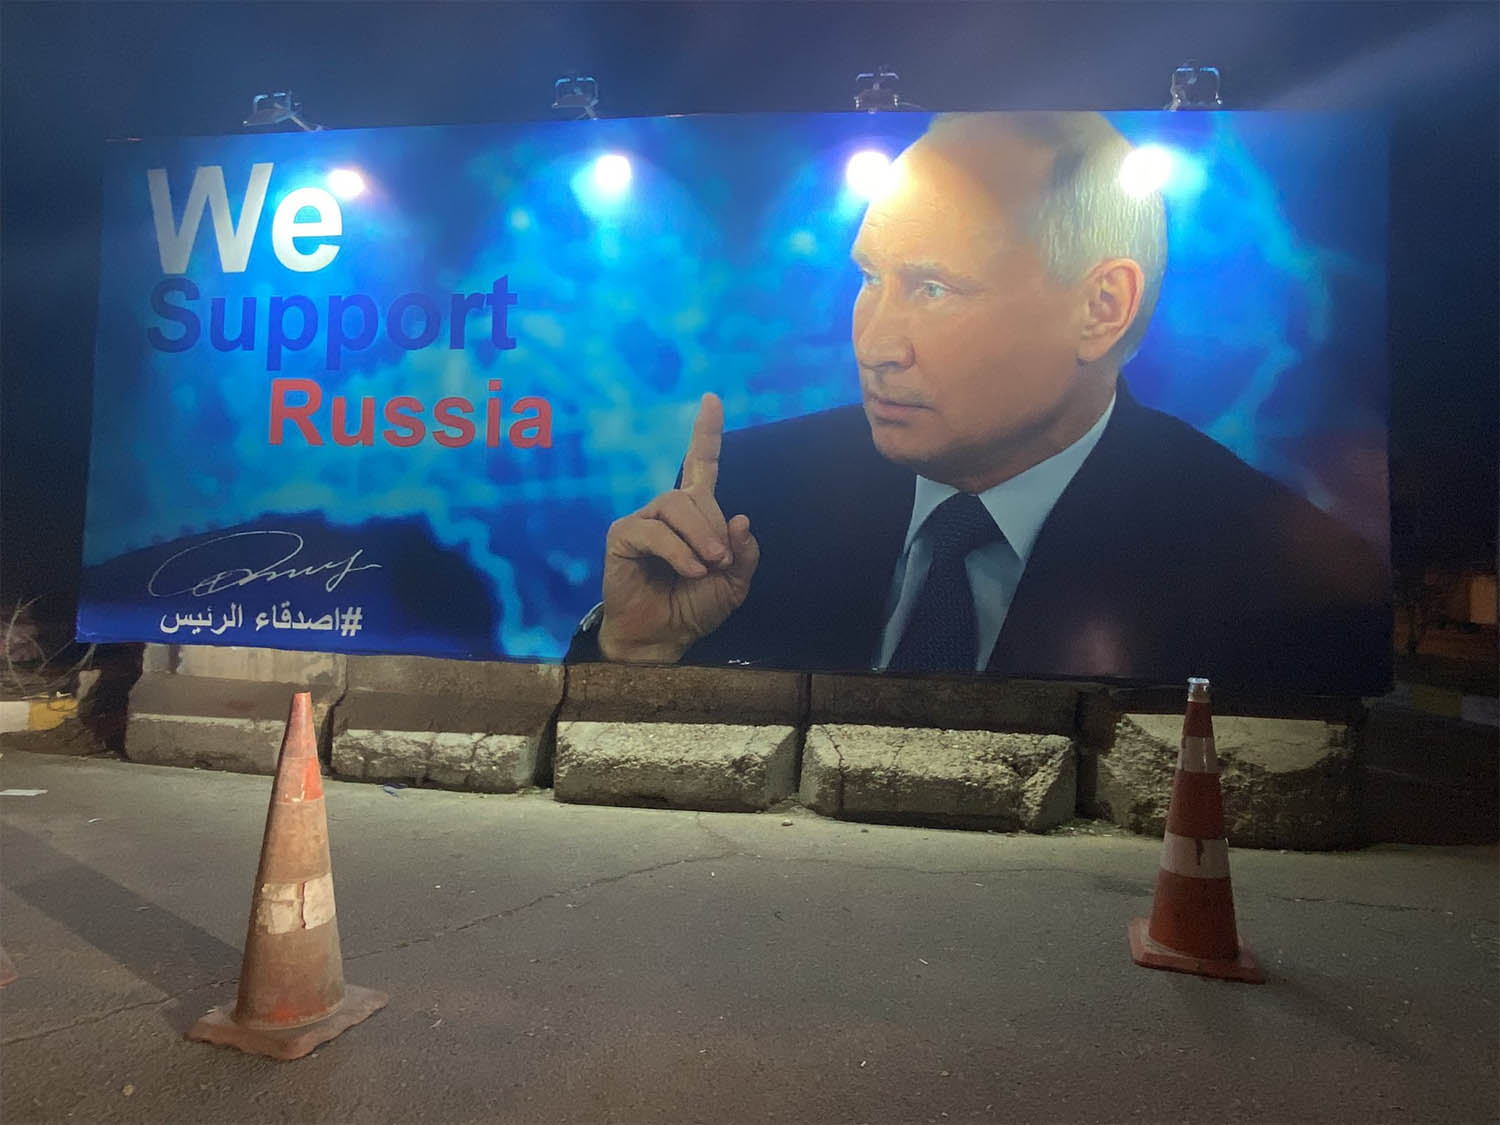 جدارية في بغداد تدعم الرئيس الروسي فلاديمير بوتين